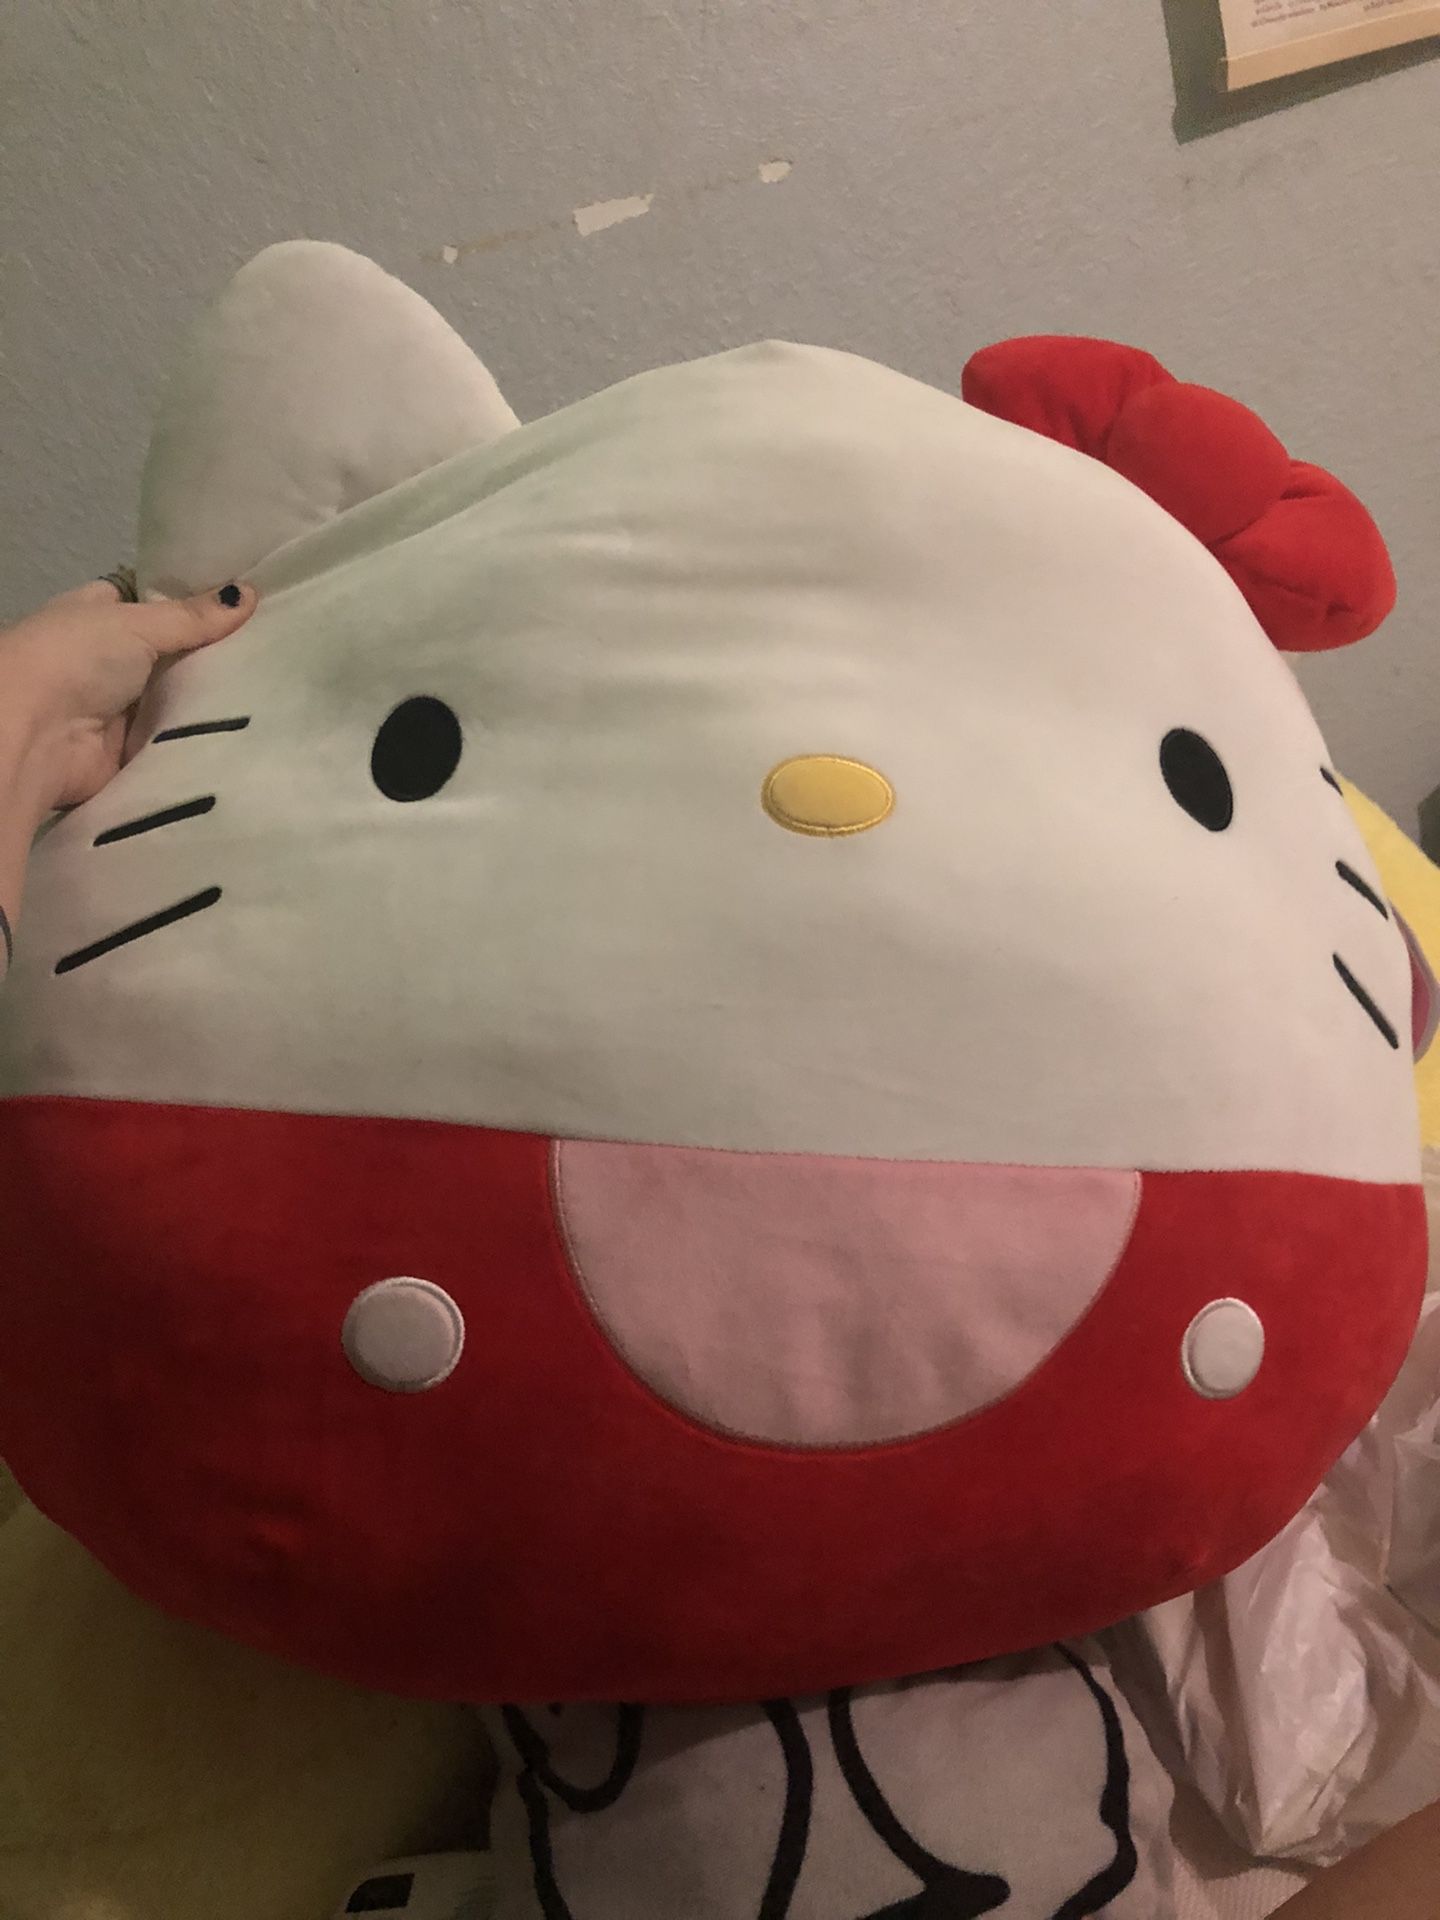 Giant Hello Kitty Squishmallow 